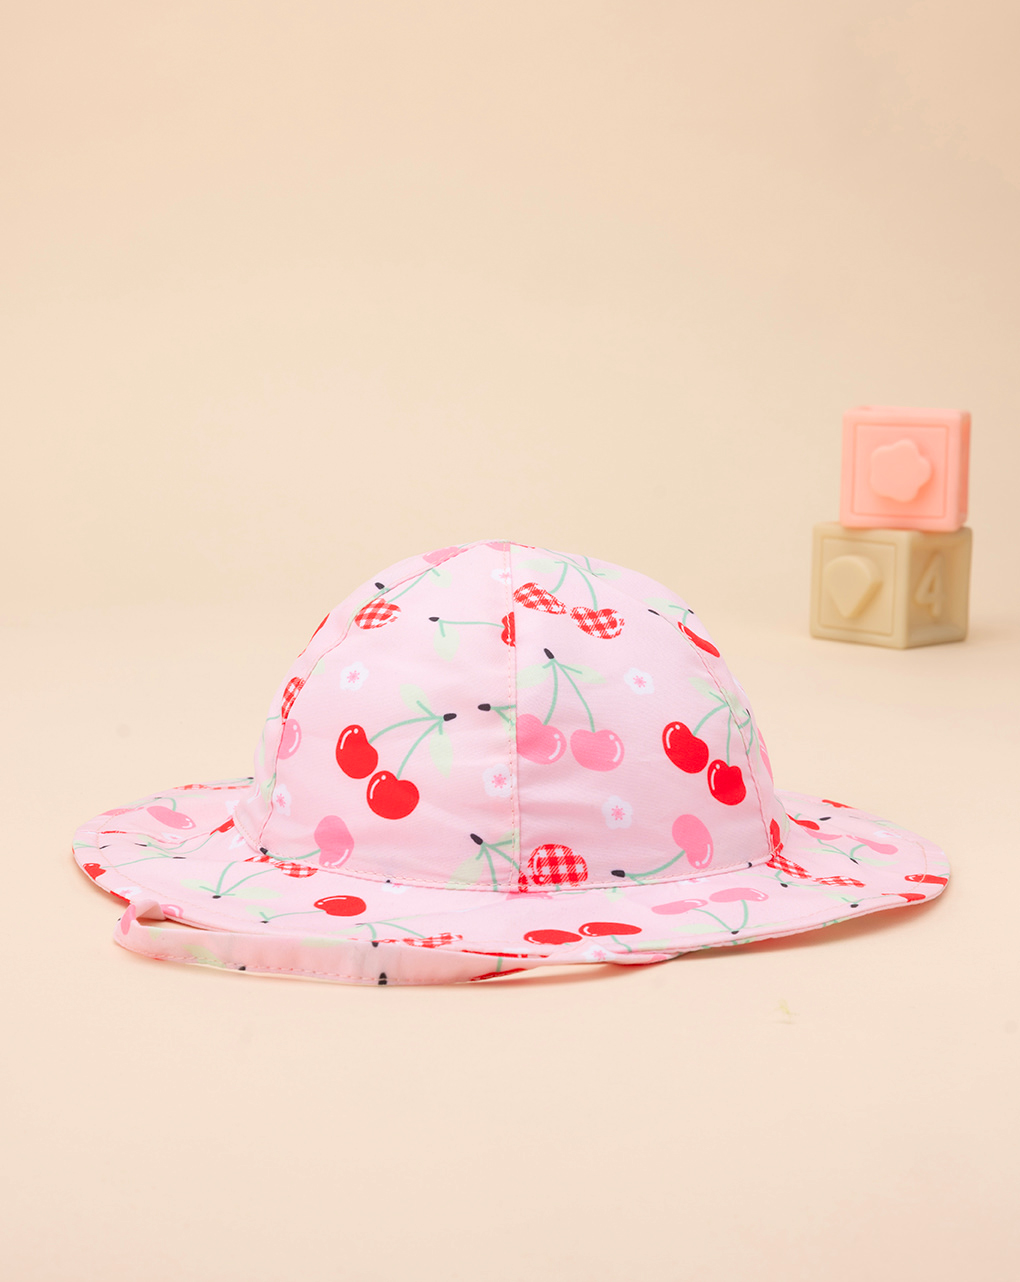 βρεφικό καπέλο θαλάσσης ροζ με κερασάκια για κορίτσι